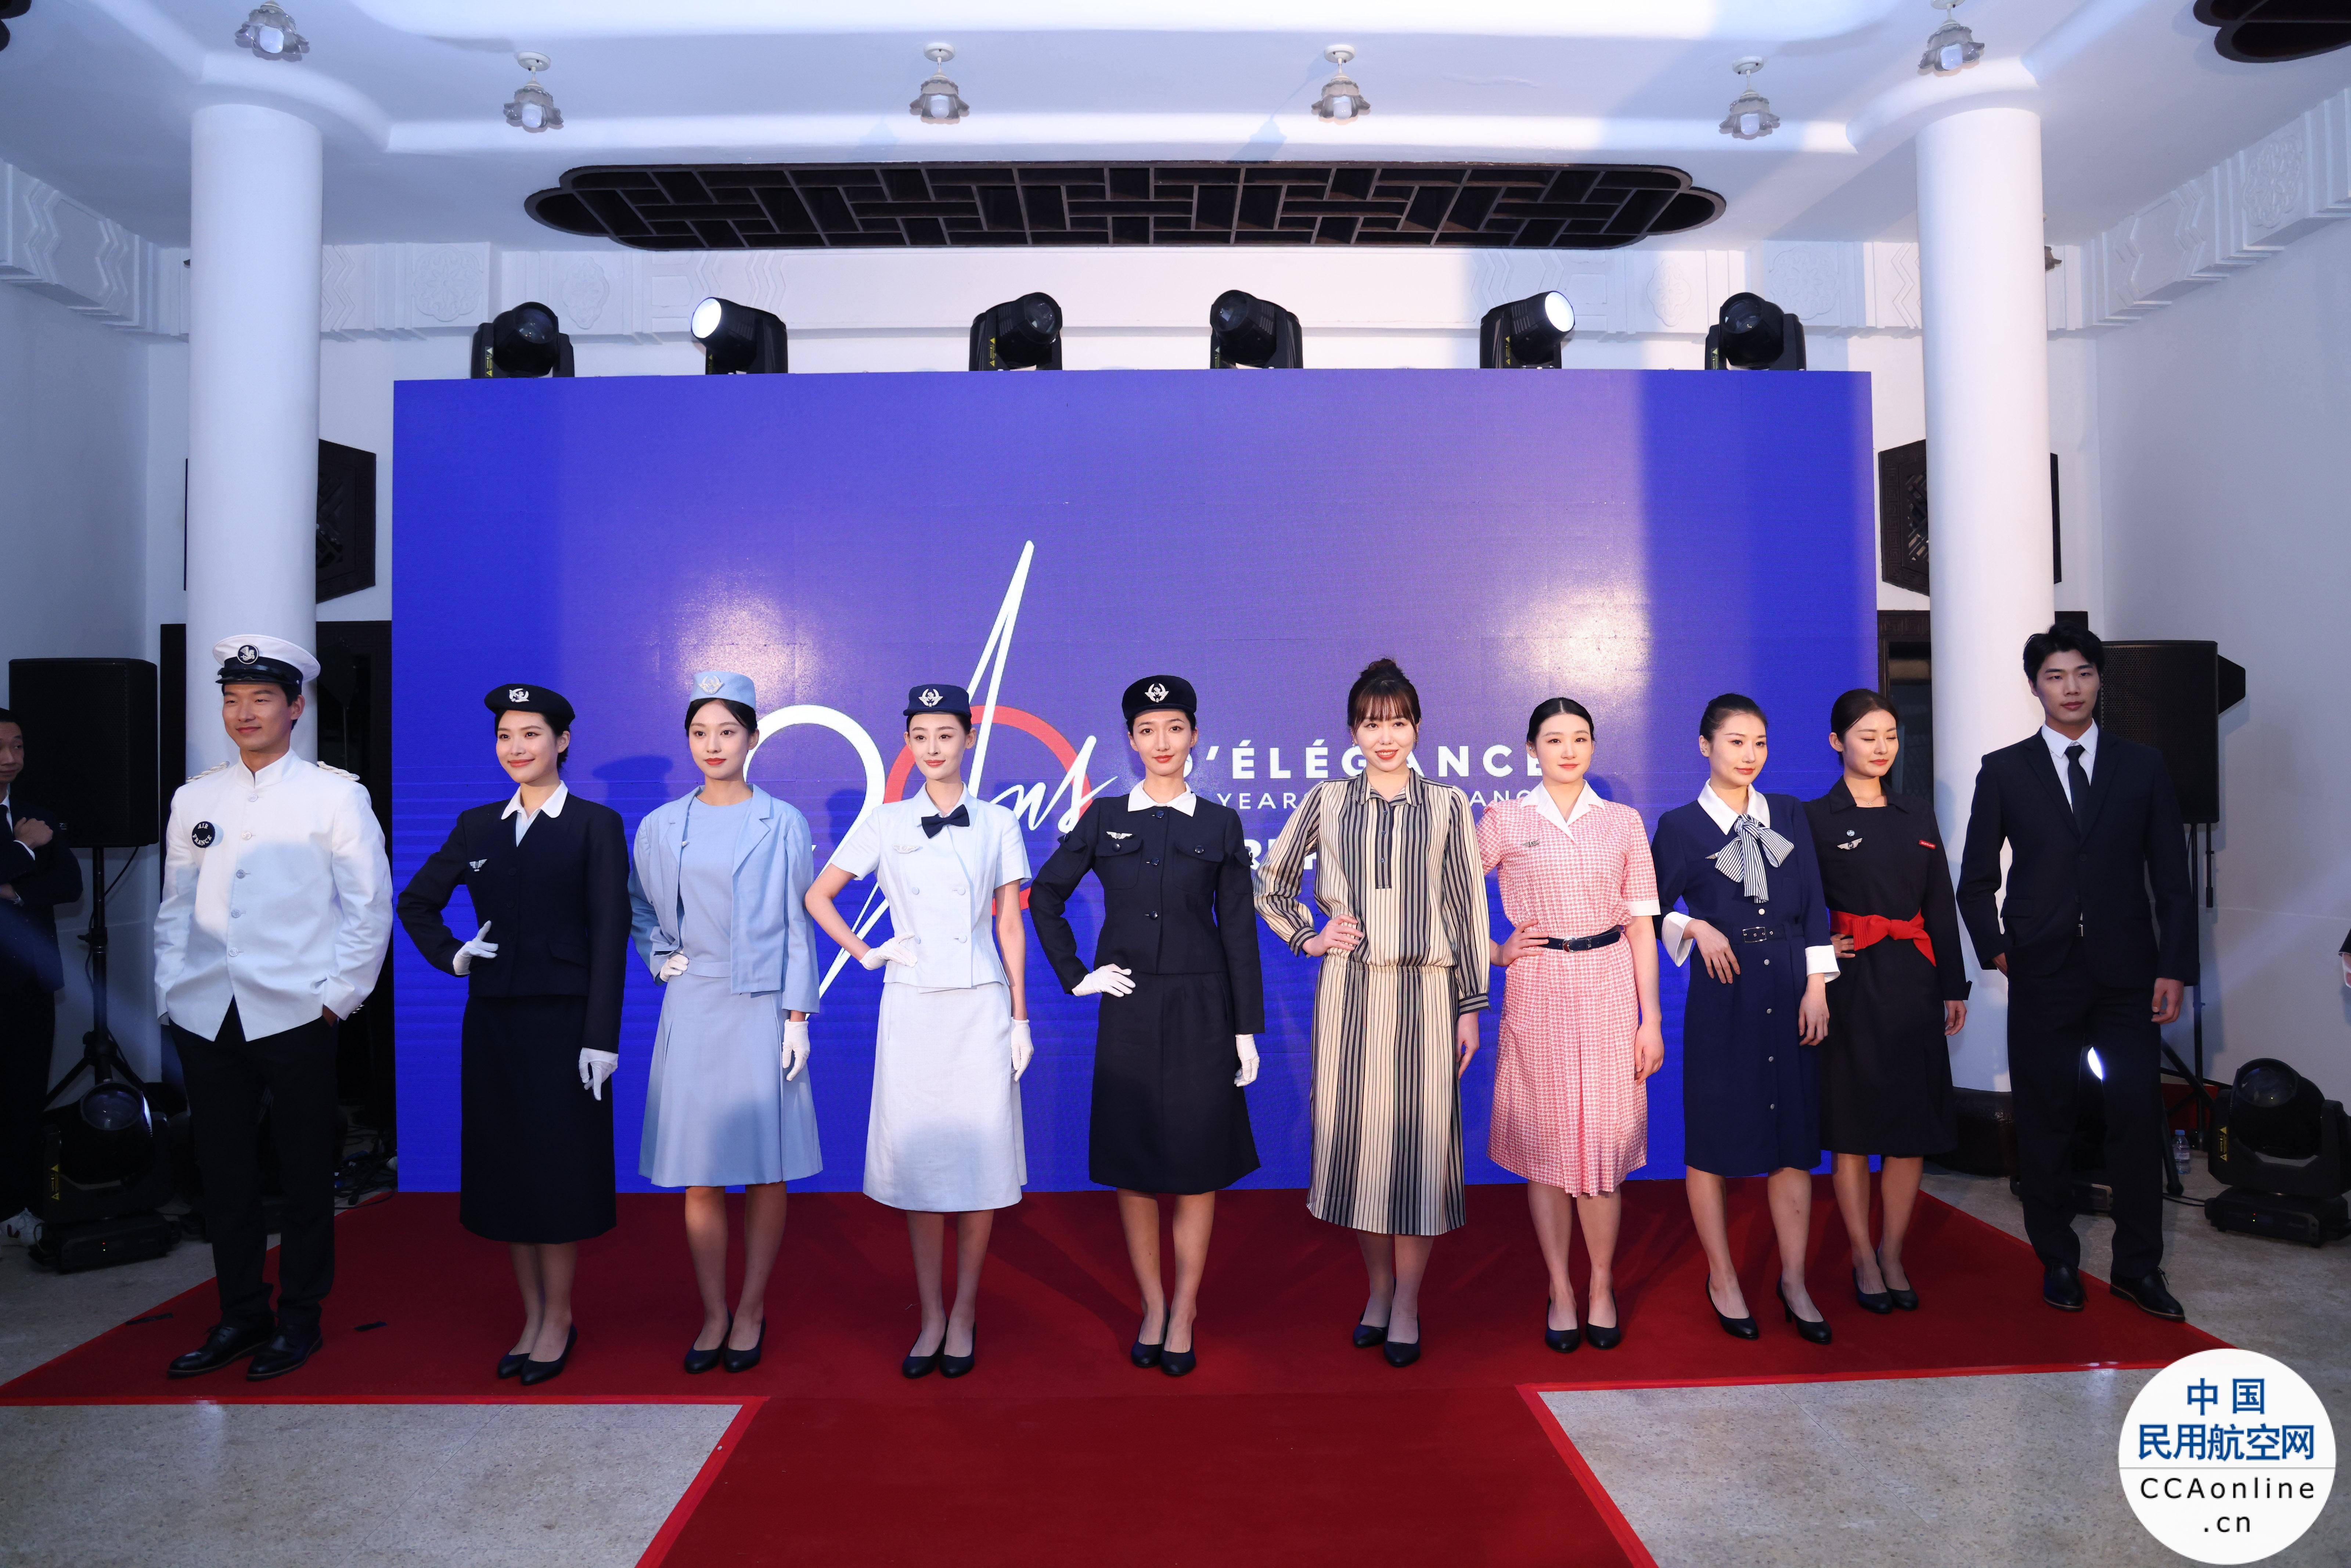 法国航空在华庆祝成立90周年